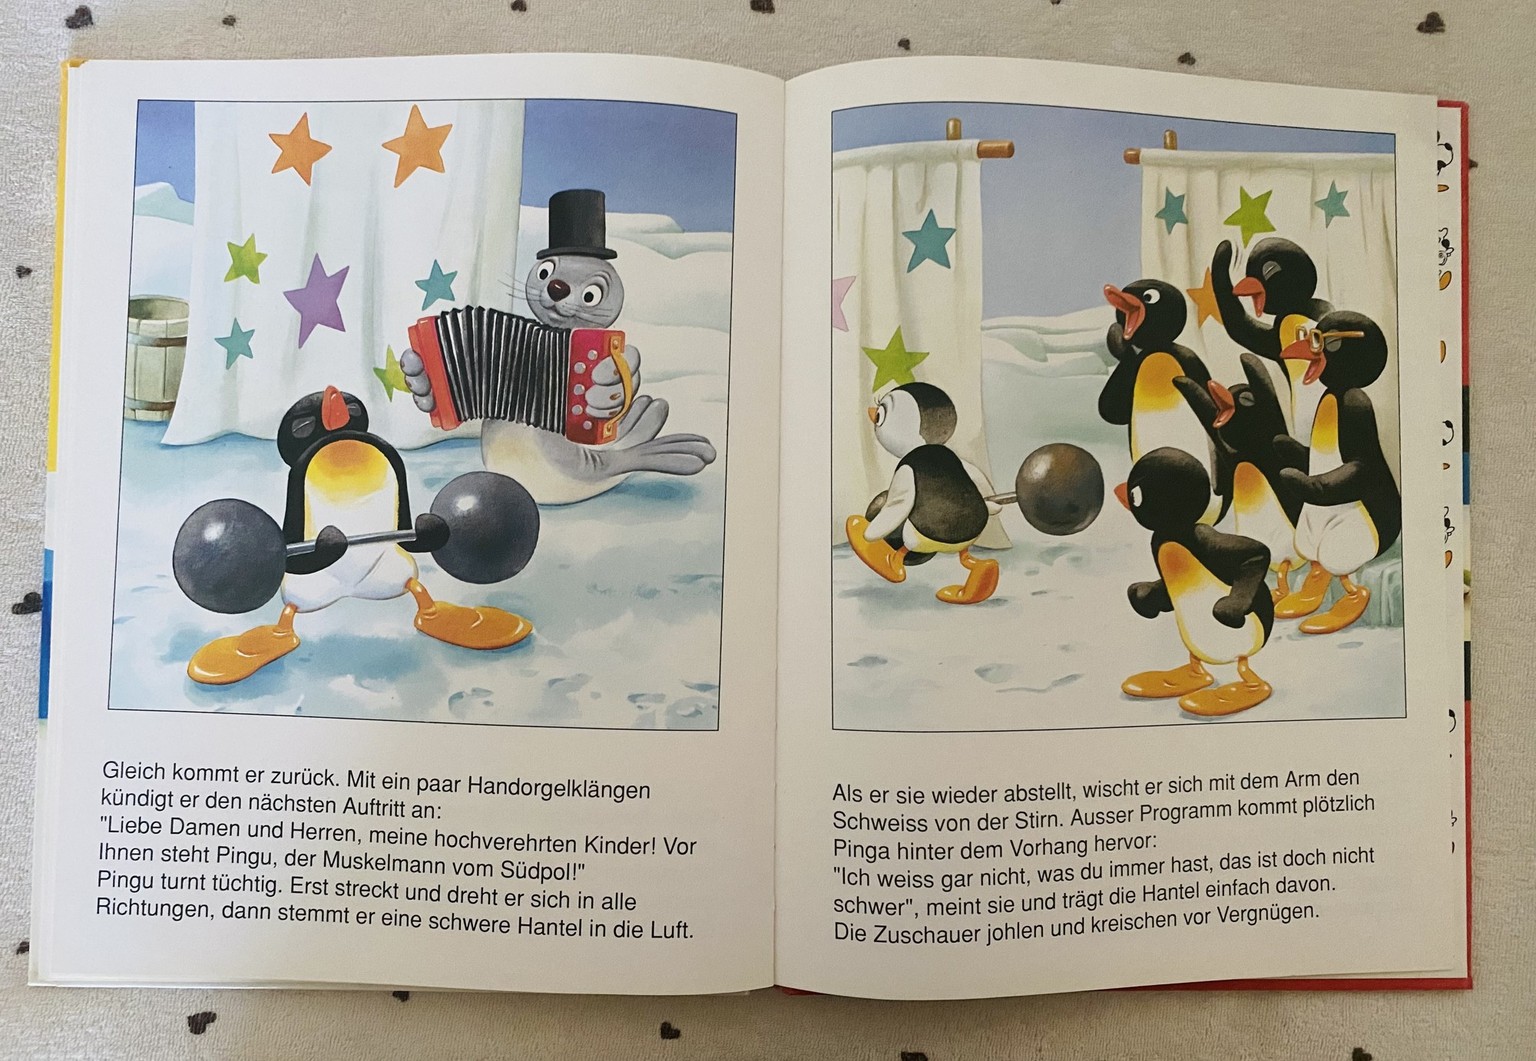 Pingu als Künstler